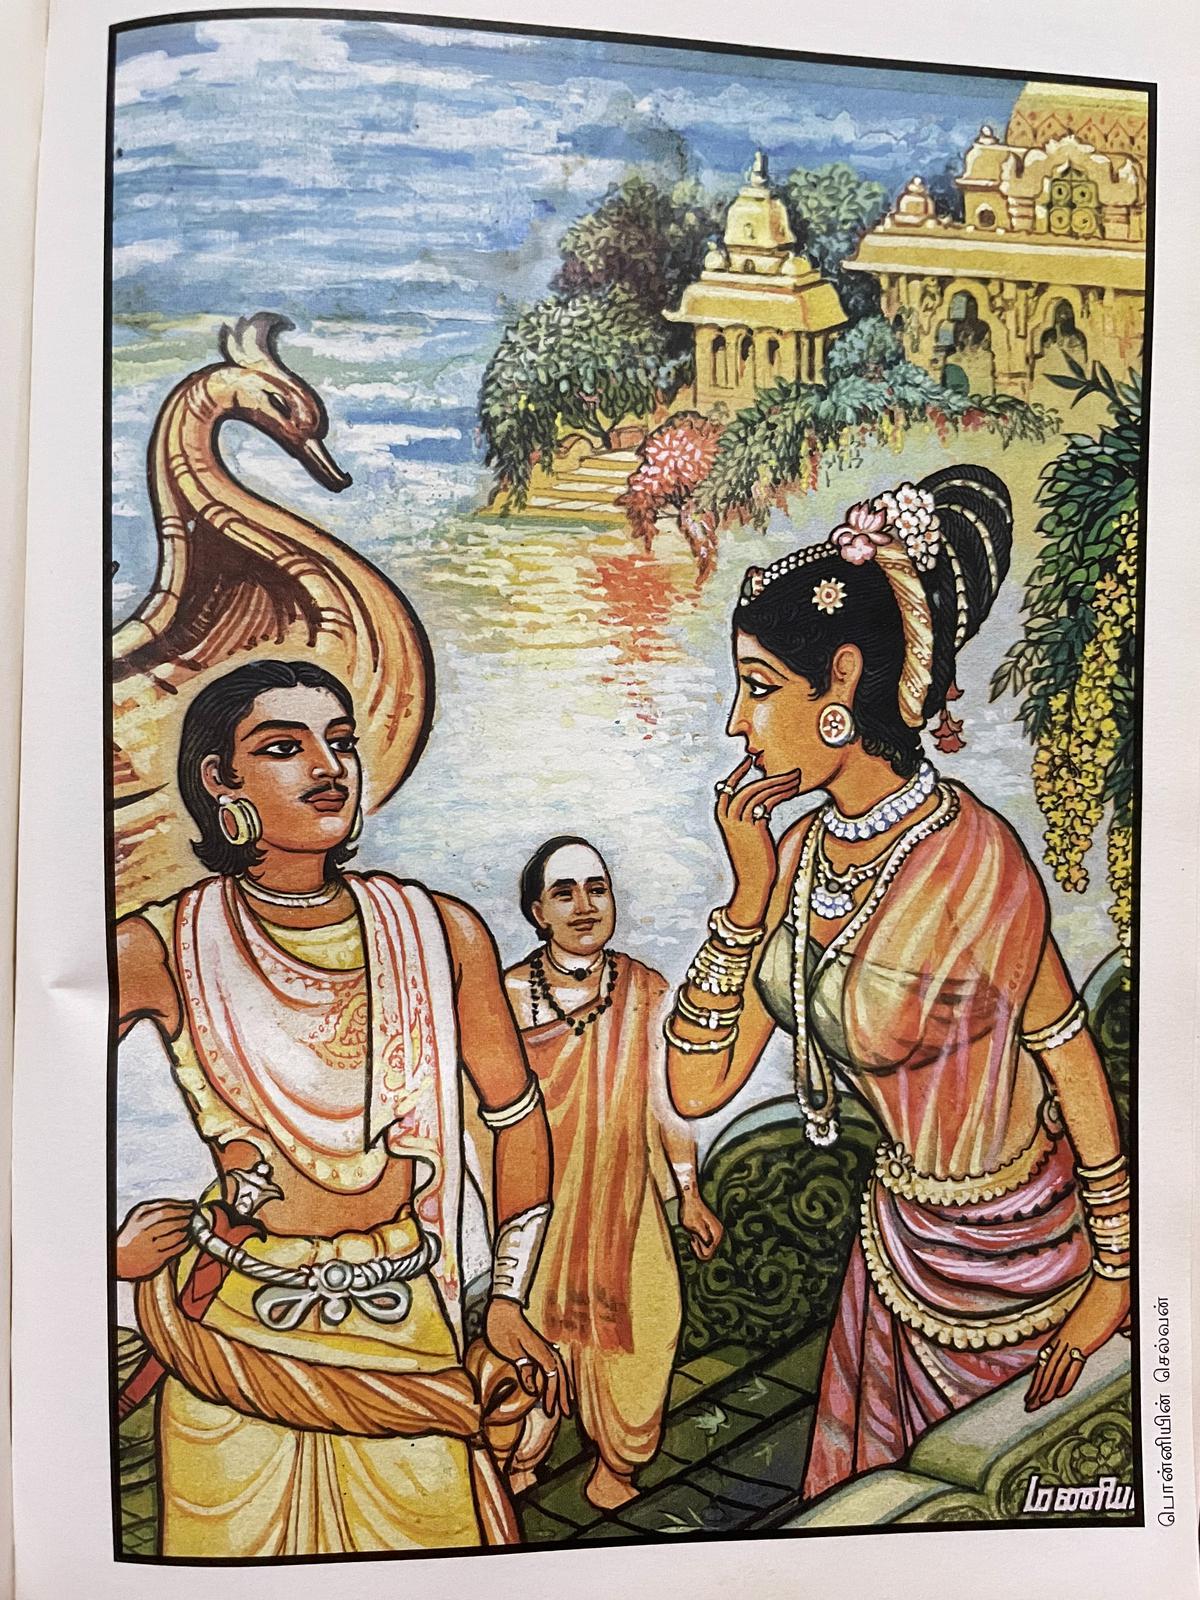 First meeting of Kundhavai and Vandhiyathevan